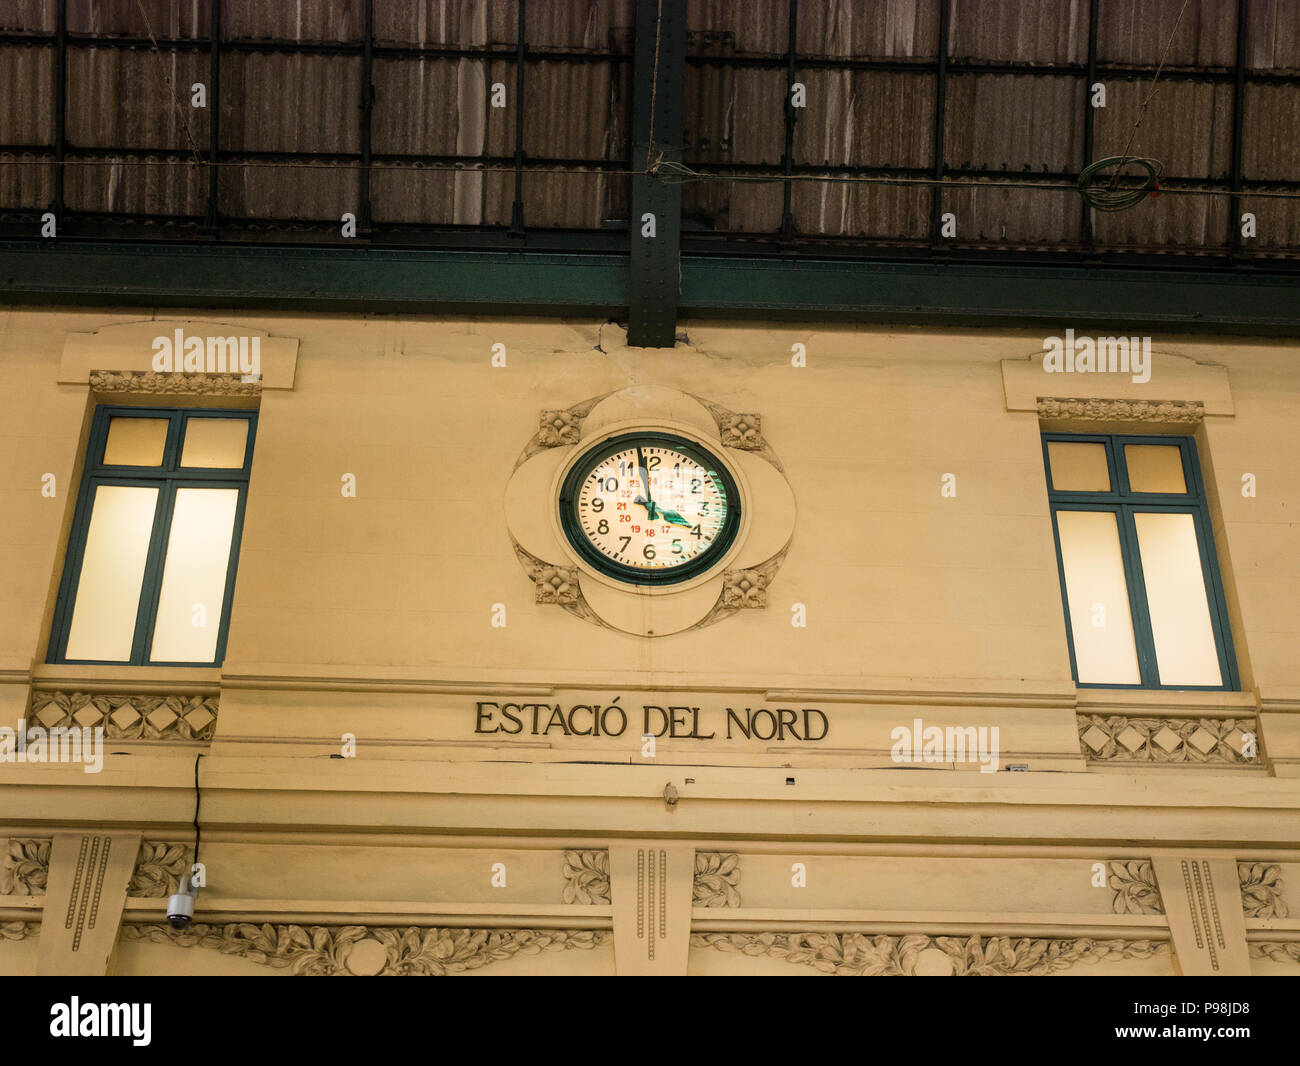 Mosaico en el techo de la estación norte de tren en Valencia, España Foto de stock